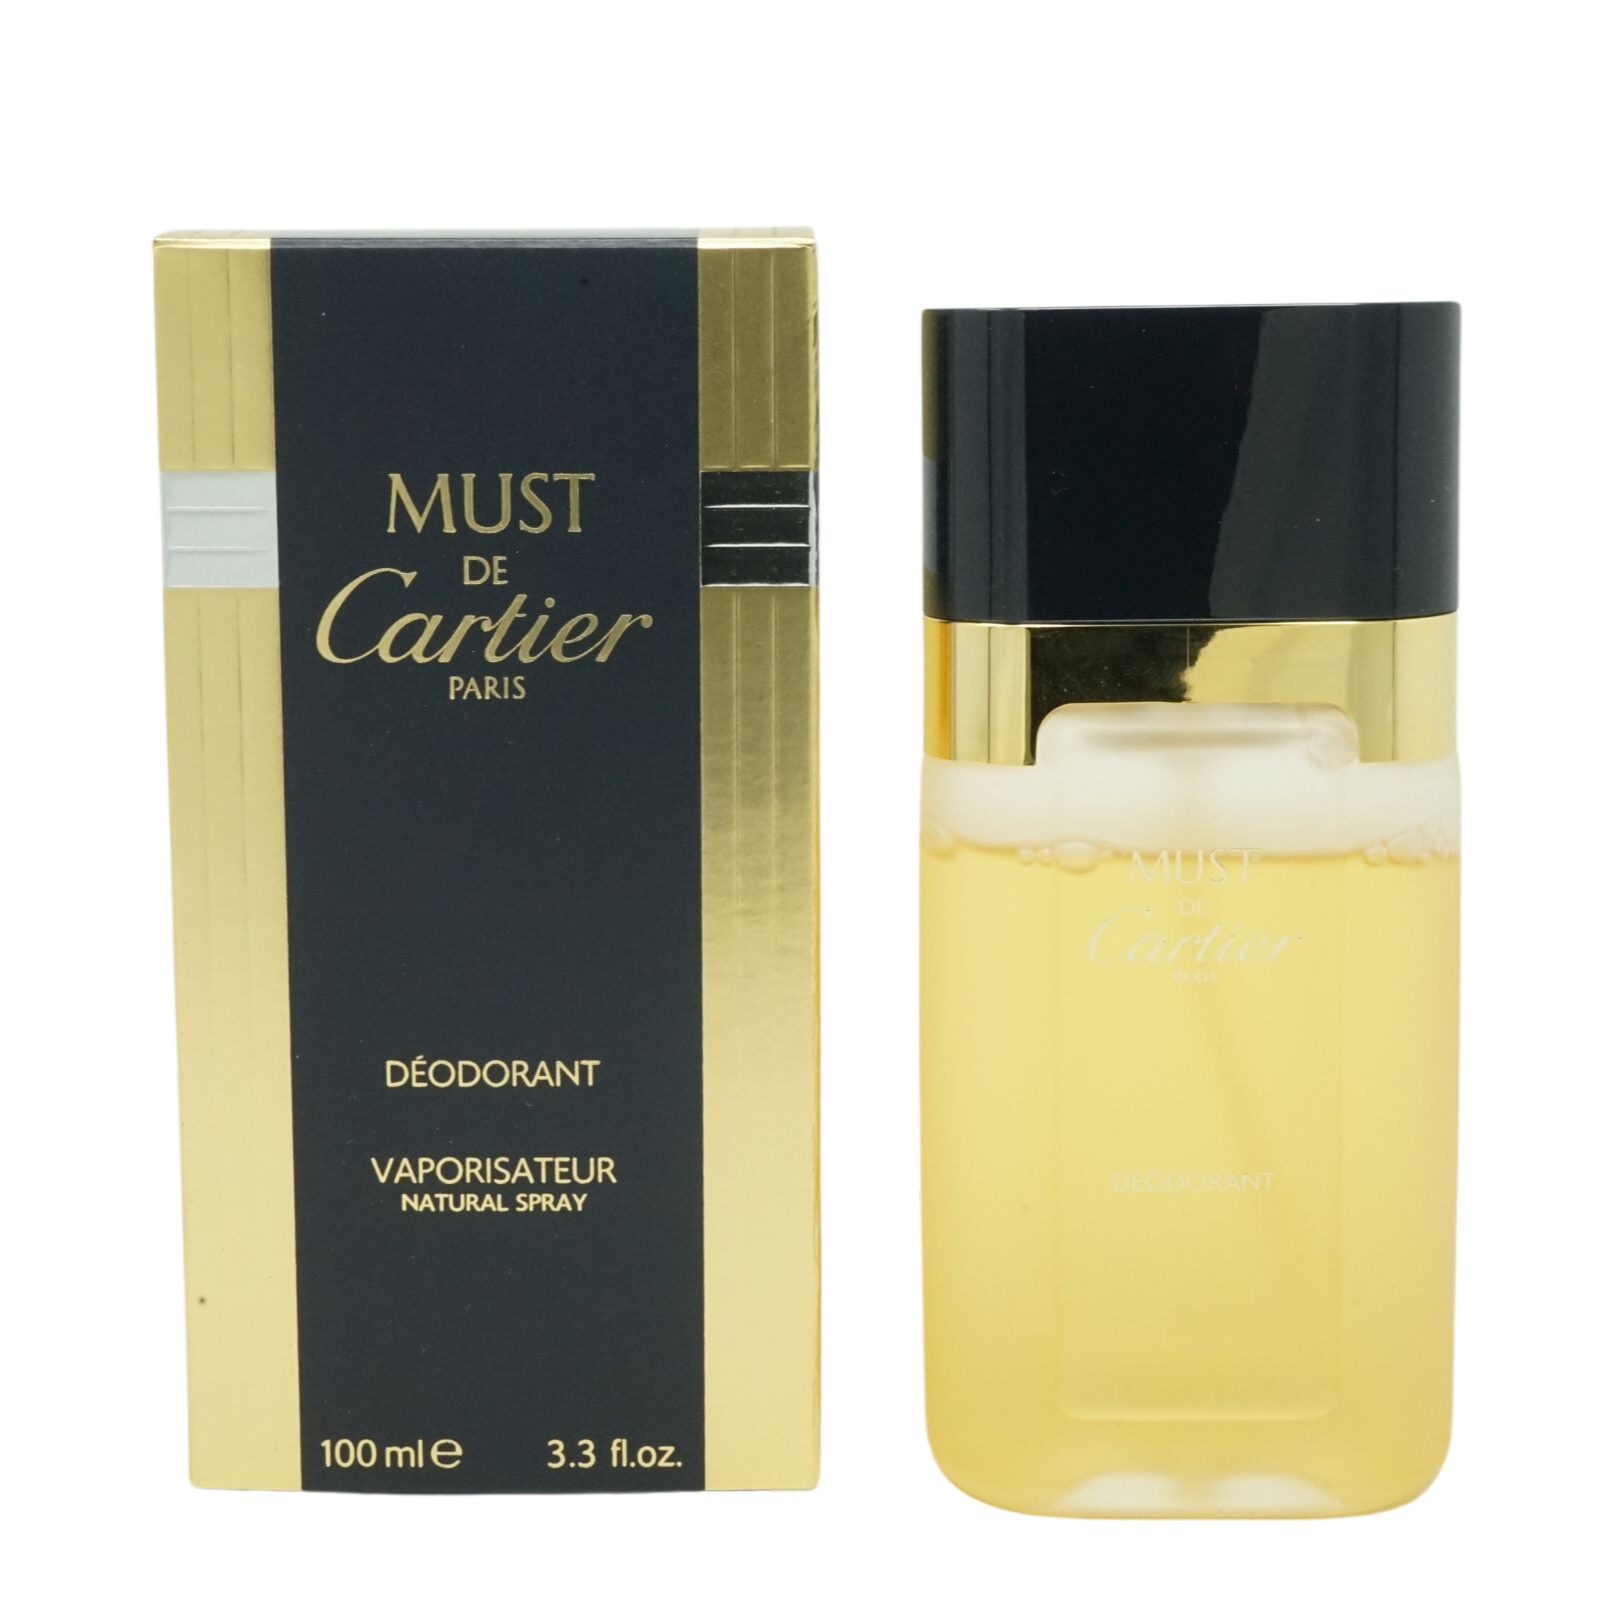 Körperspray Spray De Cartier Cartier 100ml Cartier Must Deodorant Natural